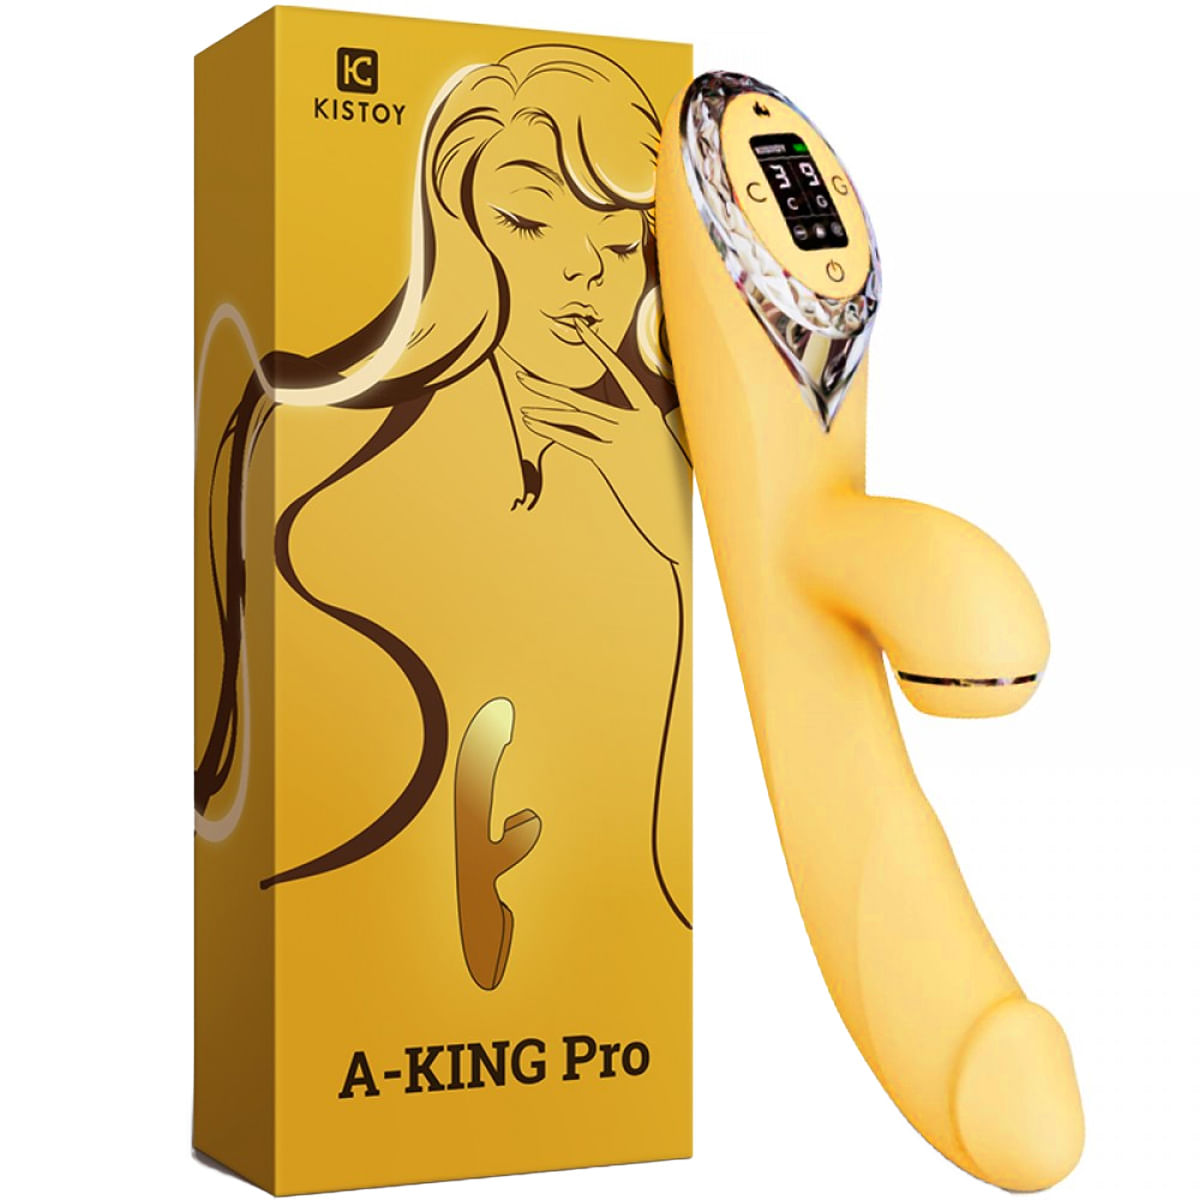 A-King Pro Vibrador 3 em 1 com 3 Níveis de Sucção e Aquecimento Vip Mix